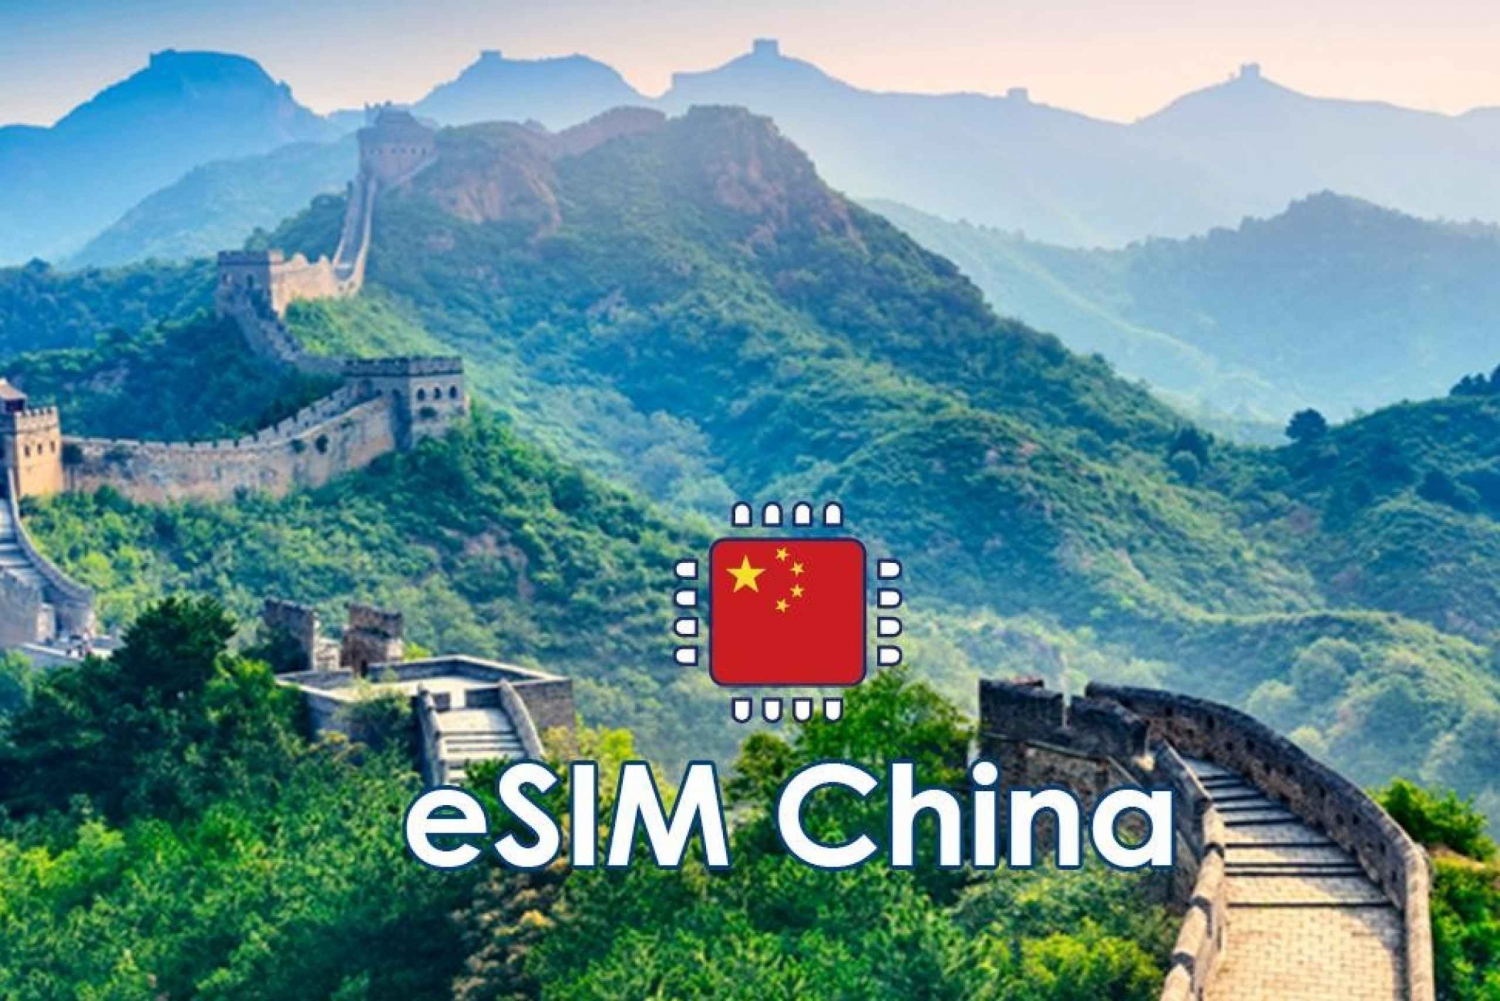 Kina: eSIM mobildataplan - 10 GB